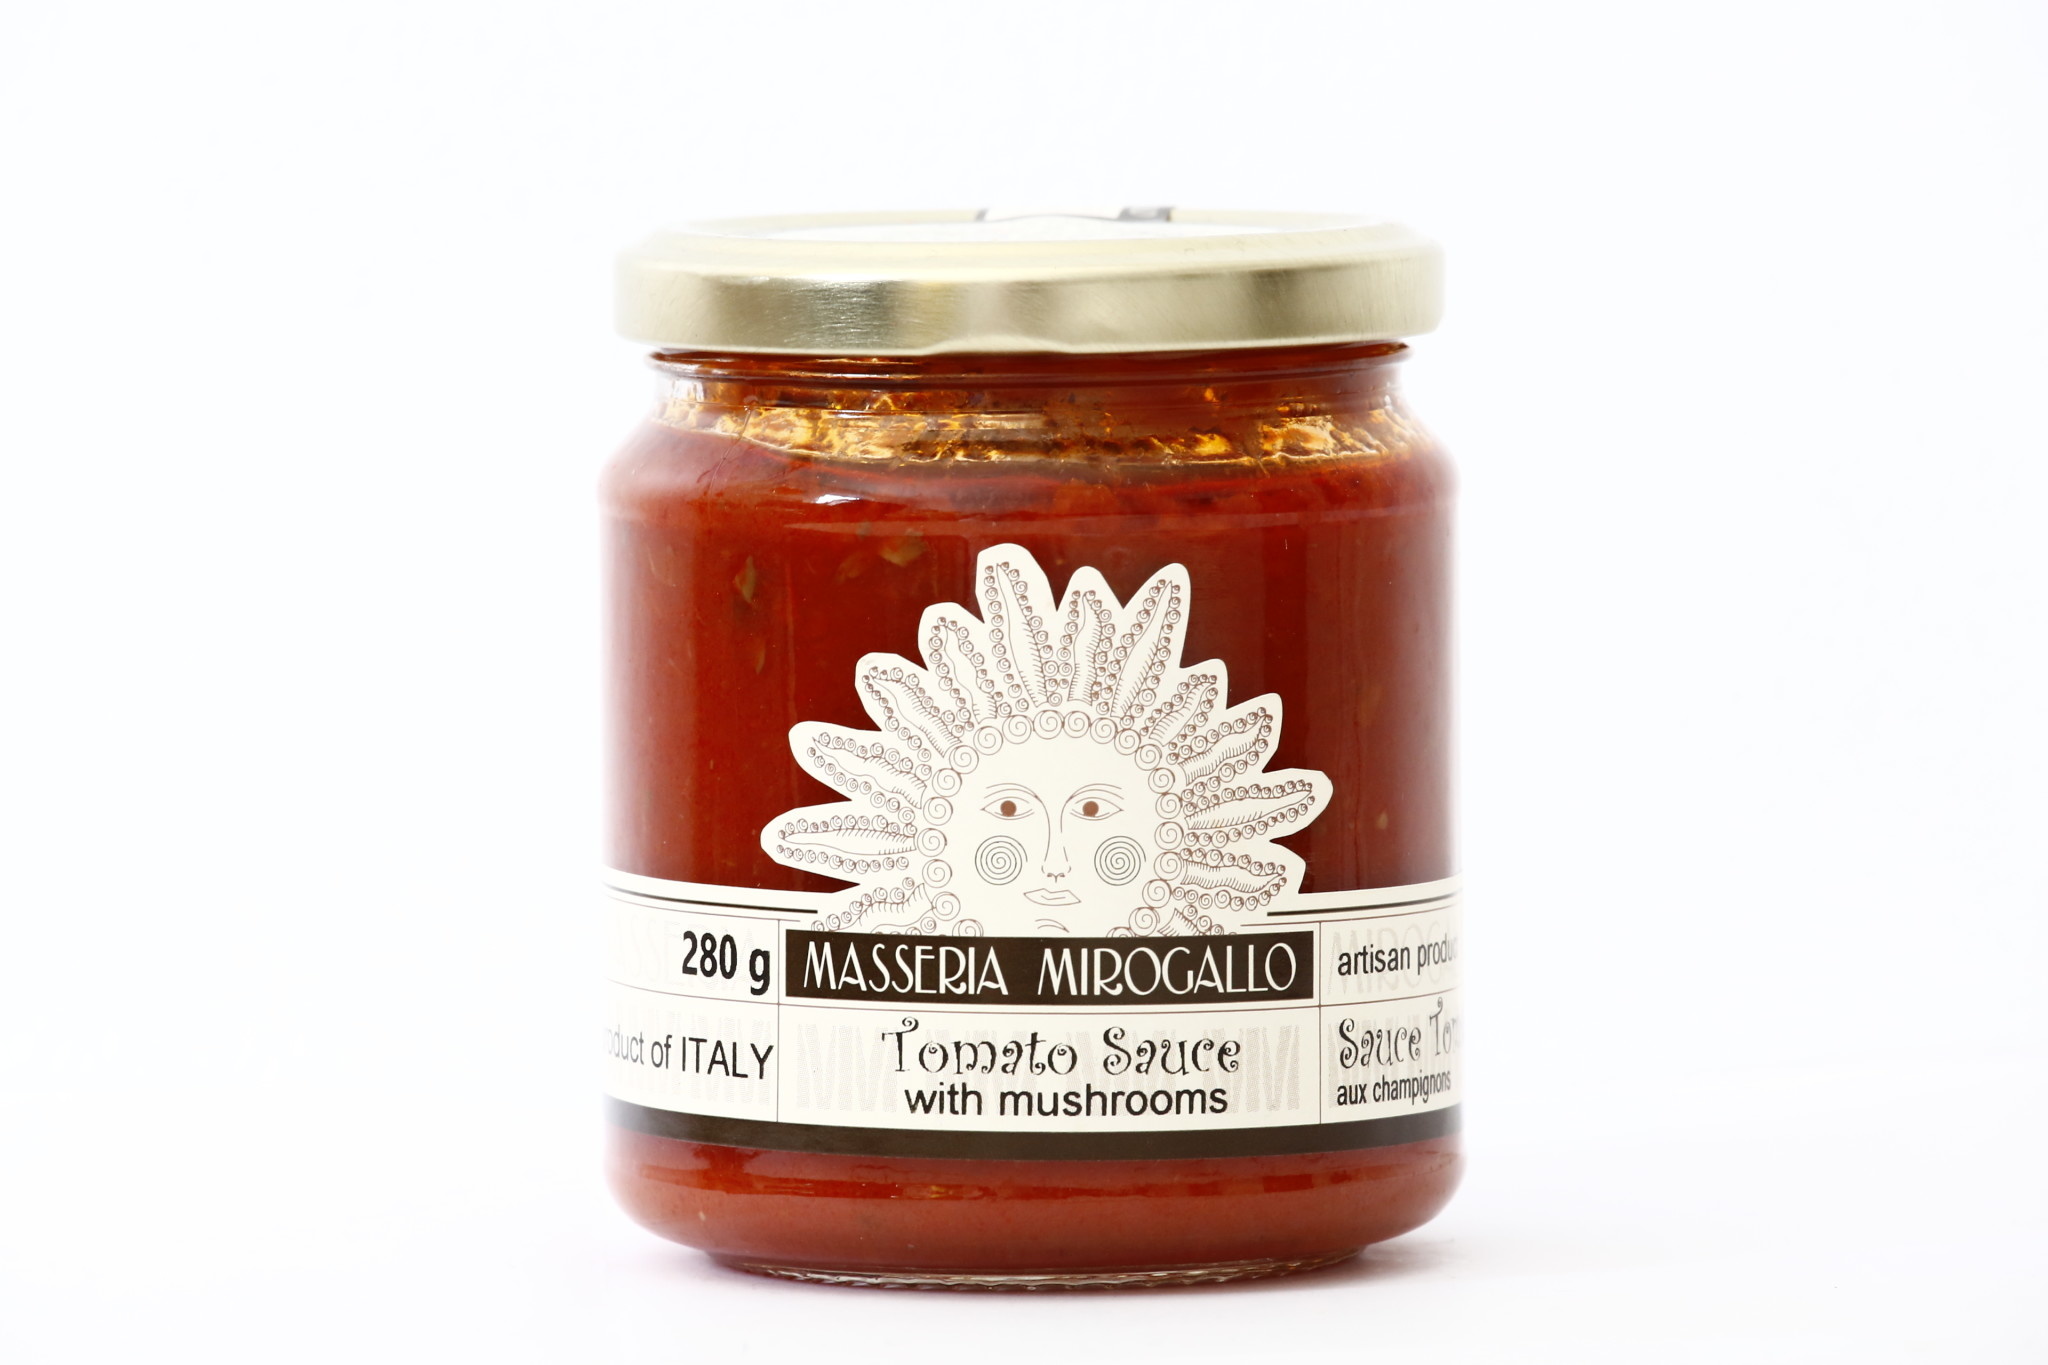 Masseria Mirogallo "Mirogallo" Tomato Based Sauce - Cardoncelli "King Oyster" Mushroom "Sugo al Funghi" 8/280g